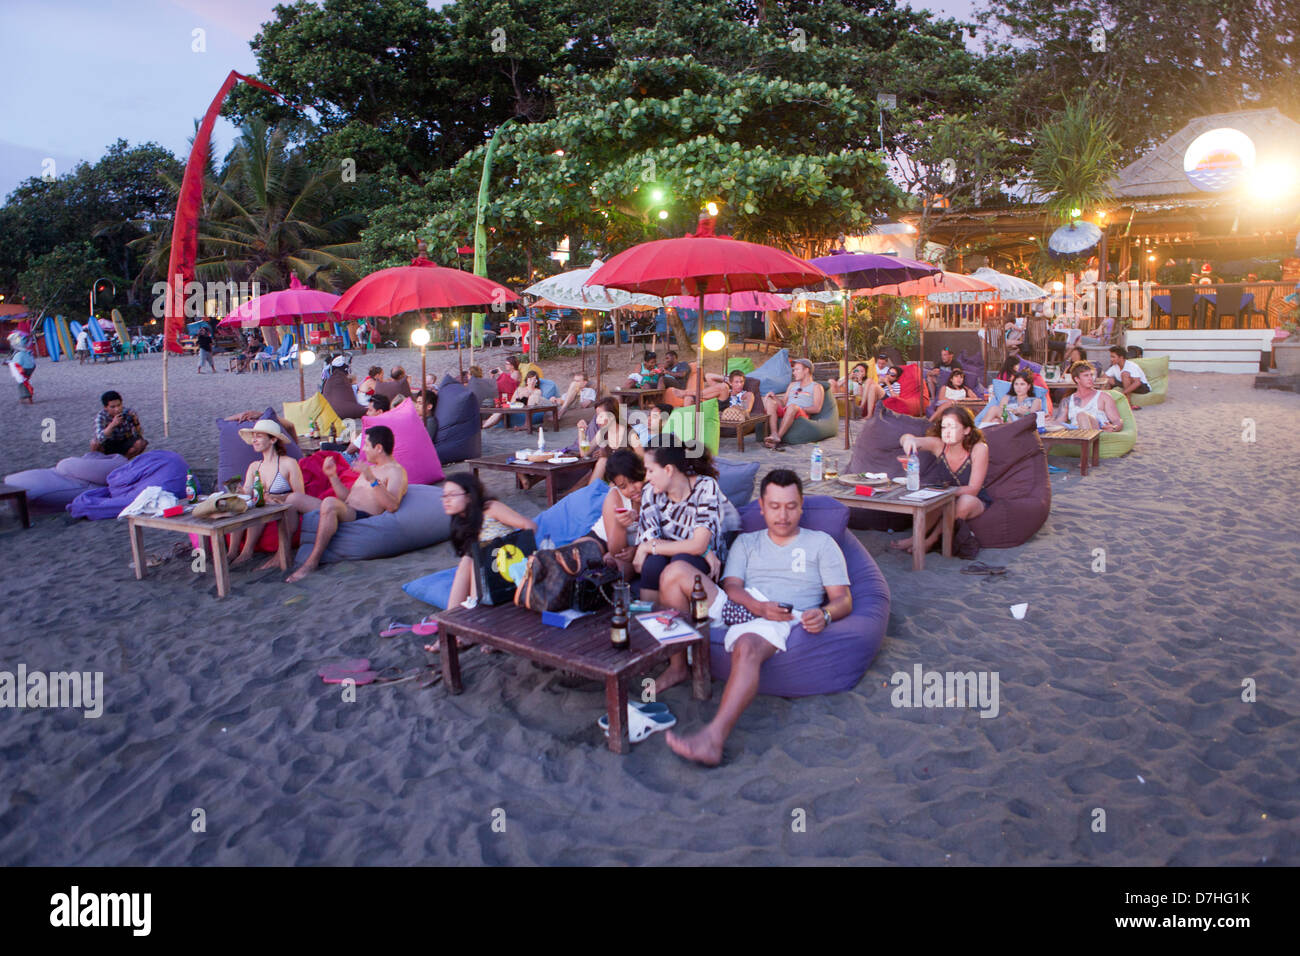 Seminyar en Bali es un popular destino de vacaciones Foto de stock